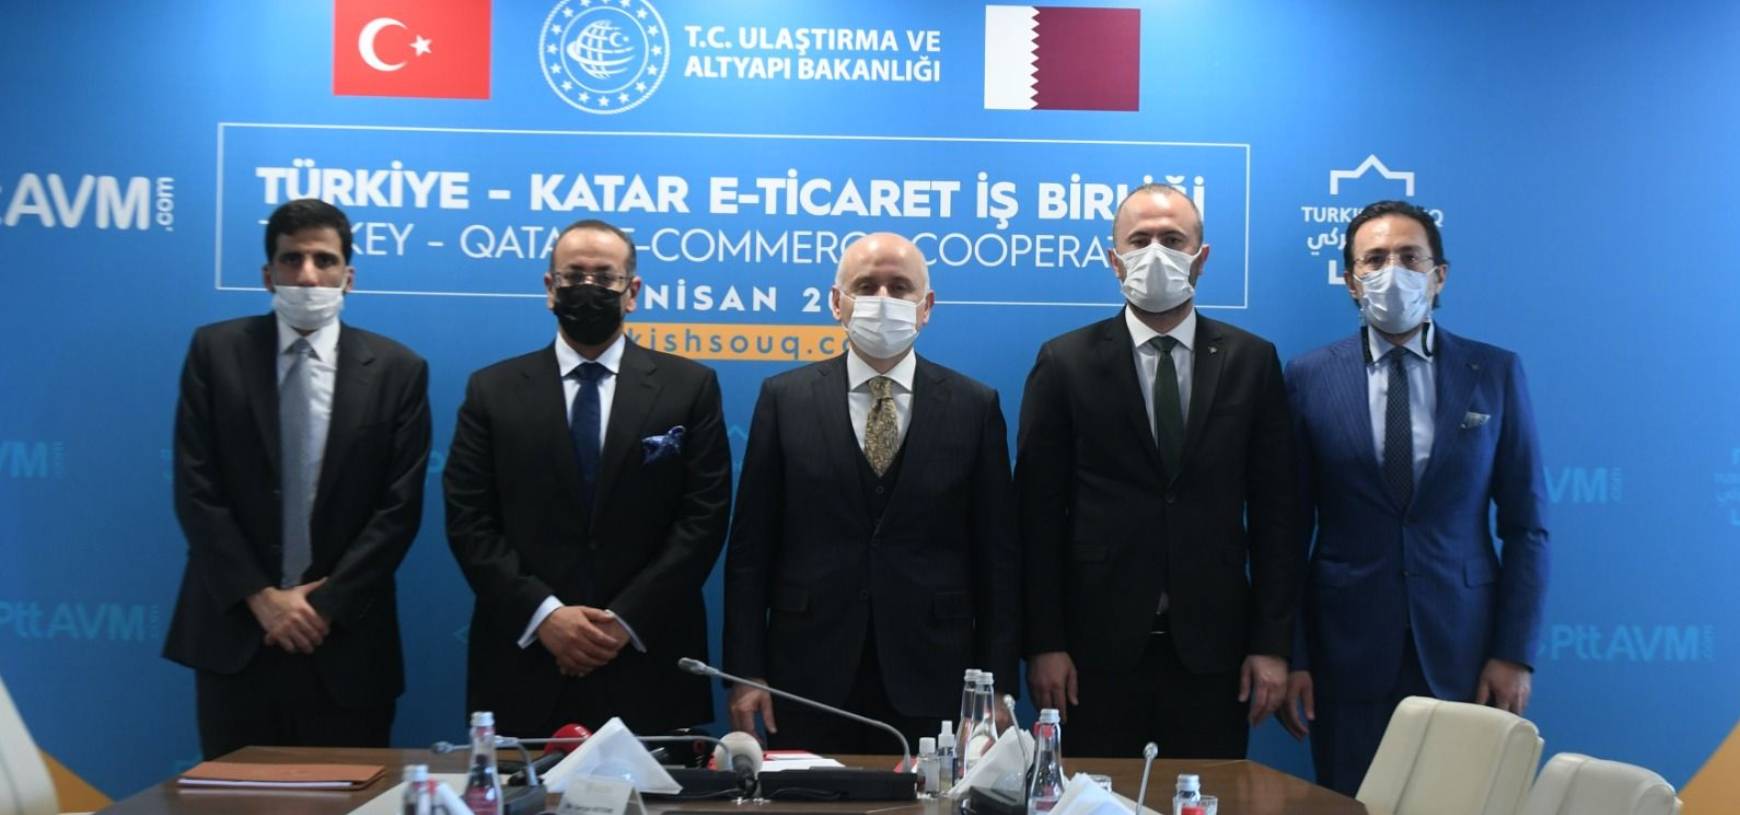 Türkiye - Katar E-Ticaret İş Birliği